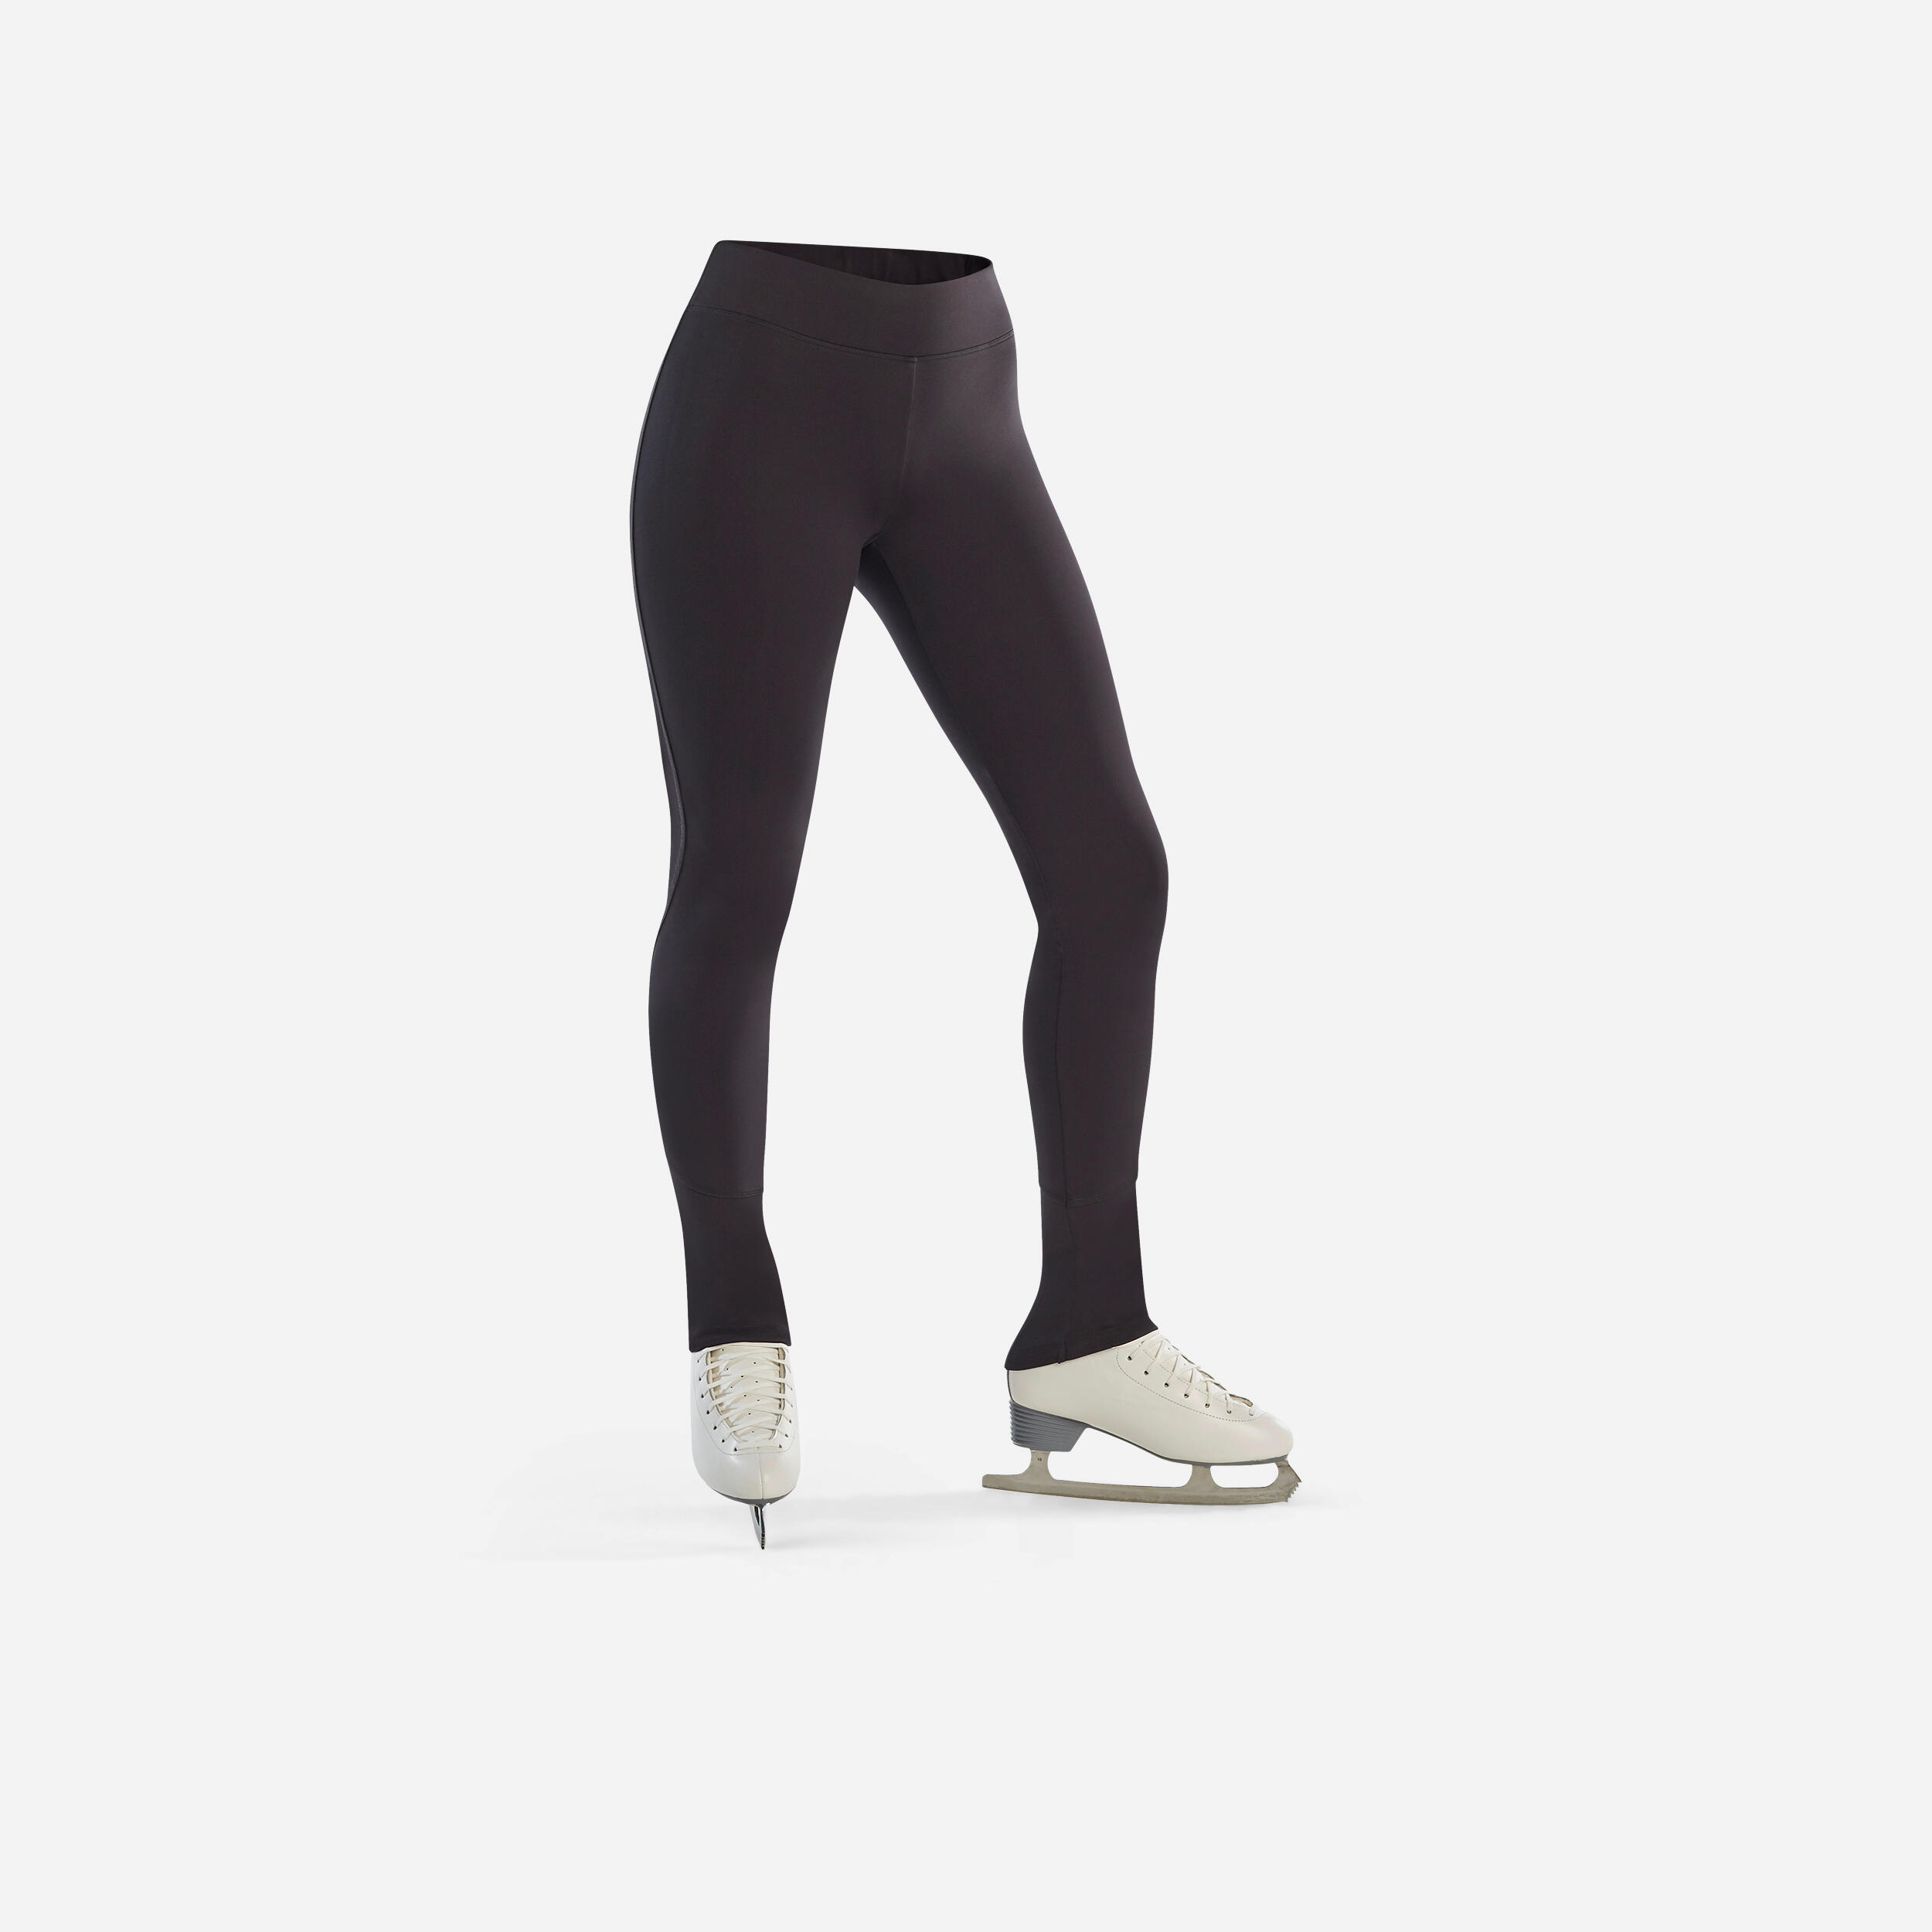 Q&M Fille Leggings de Patinage Artistique pour Femme Pantalon d'entraînement Respirant hautement Extensible Convient pour 4 Saisons 